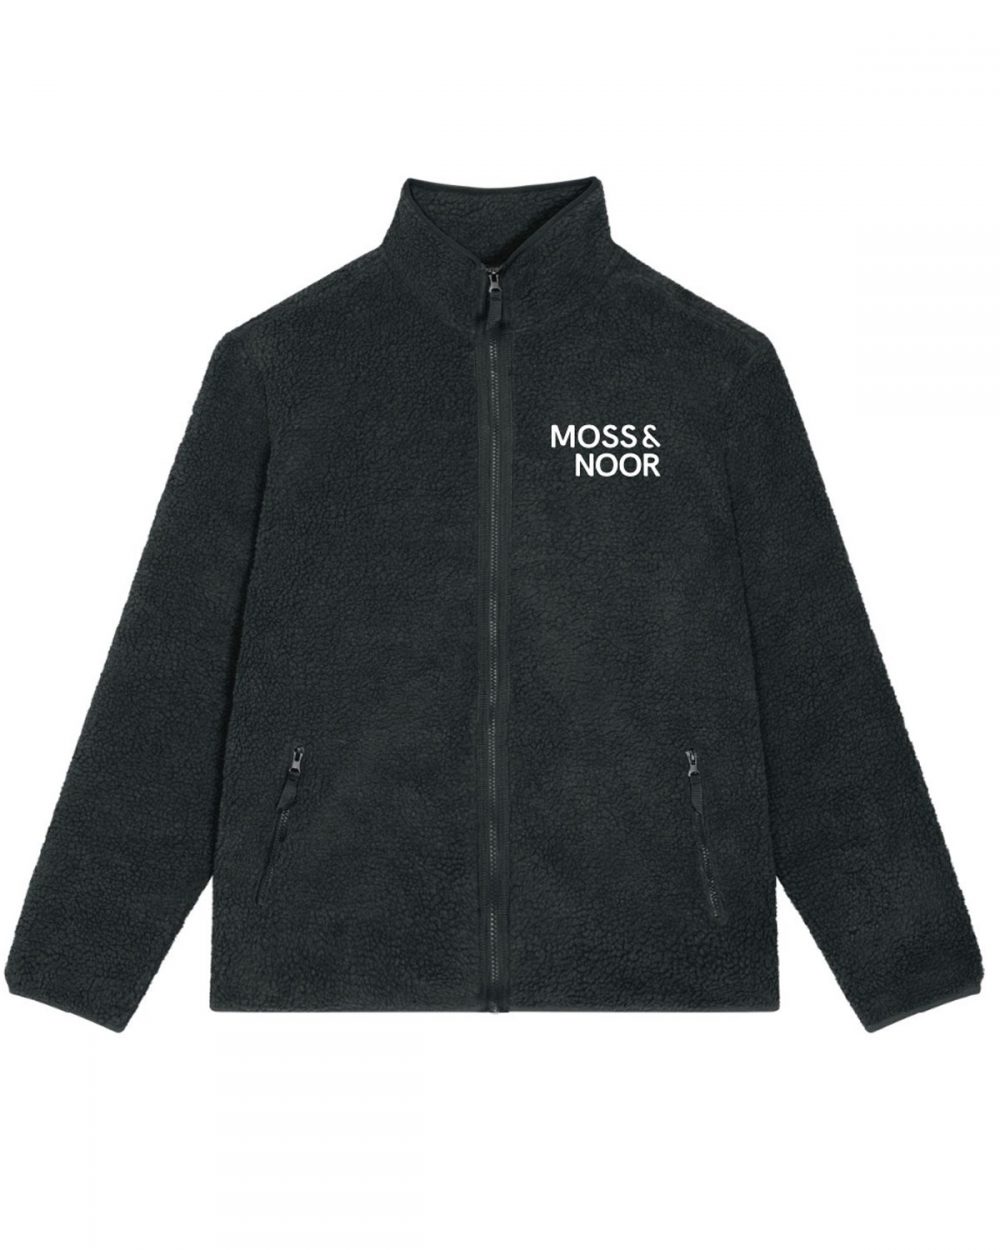 Moss & Noor Teddy Pile Jacket